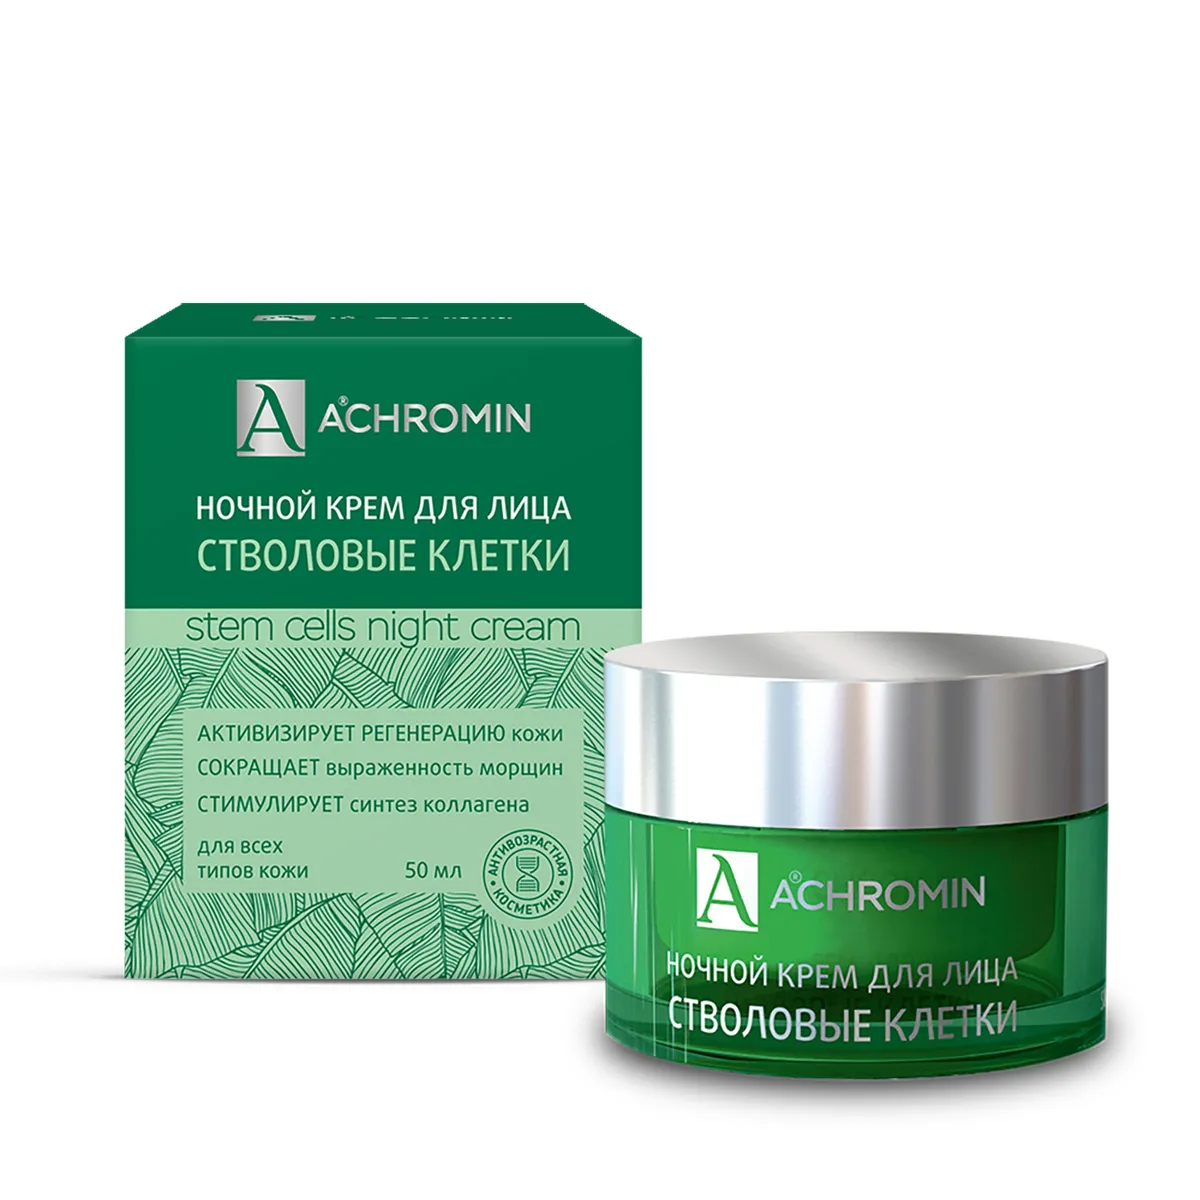 Achromin ® Ночной крем для лица со стволовыми клетками яблока,банка50мл anti-age